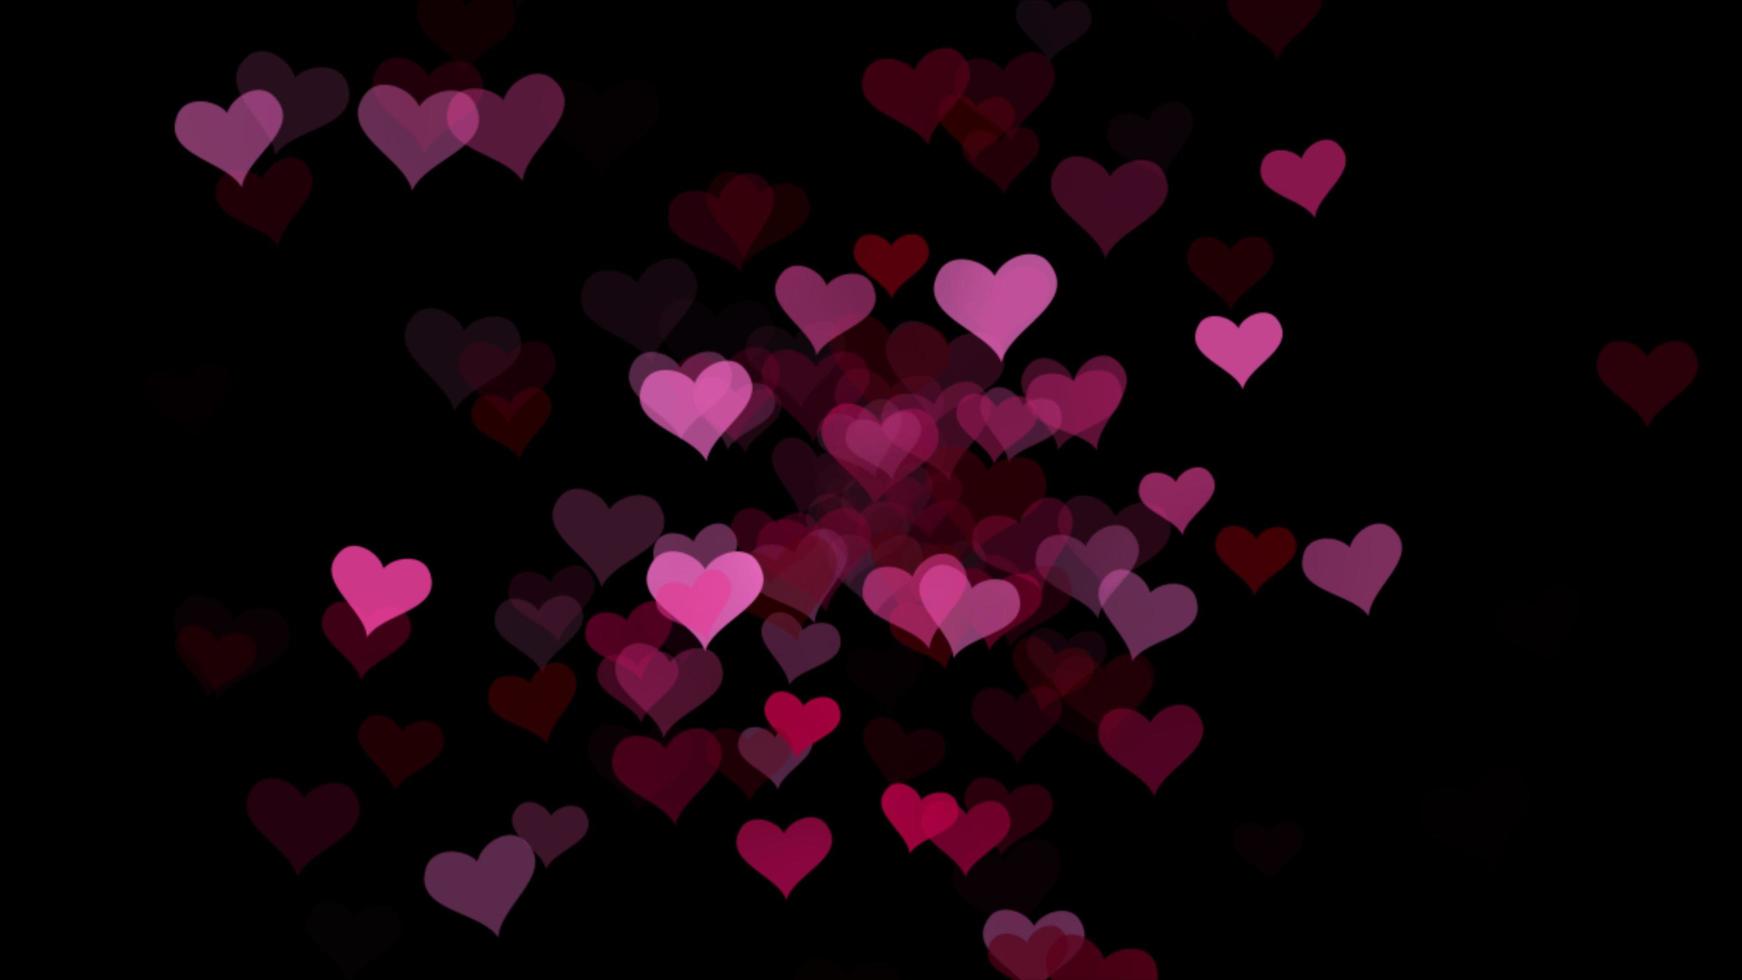 Các trái tim hồng là biểu tượng cổ điển của tình yêu và nó luôn mang lại một cảm giác ấm áp và tươi vui. Hãy trải nghiệm một không gian sống độc đáo với hình nền trang trí trái tim hồng rực rỡ để làm tăng thêm không khí Lễ tình nhân năm nay.